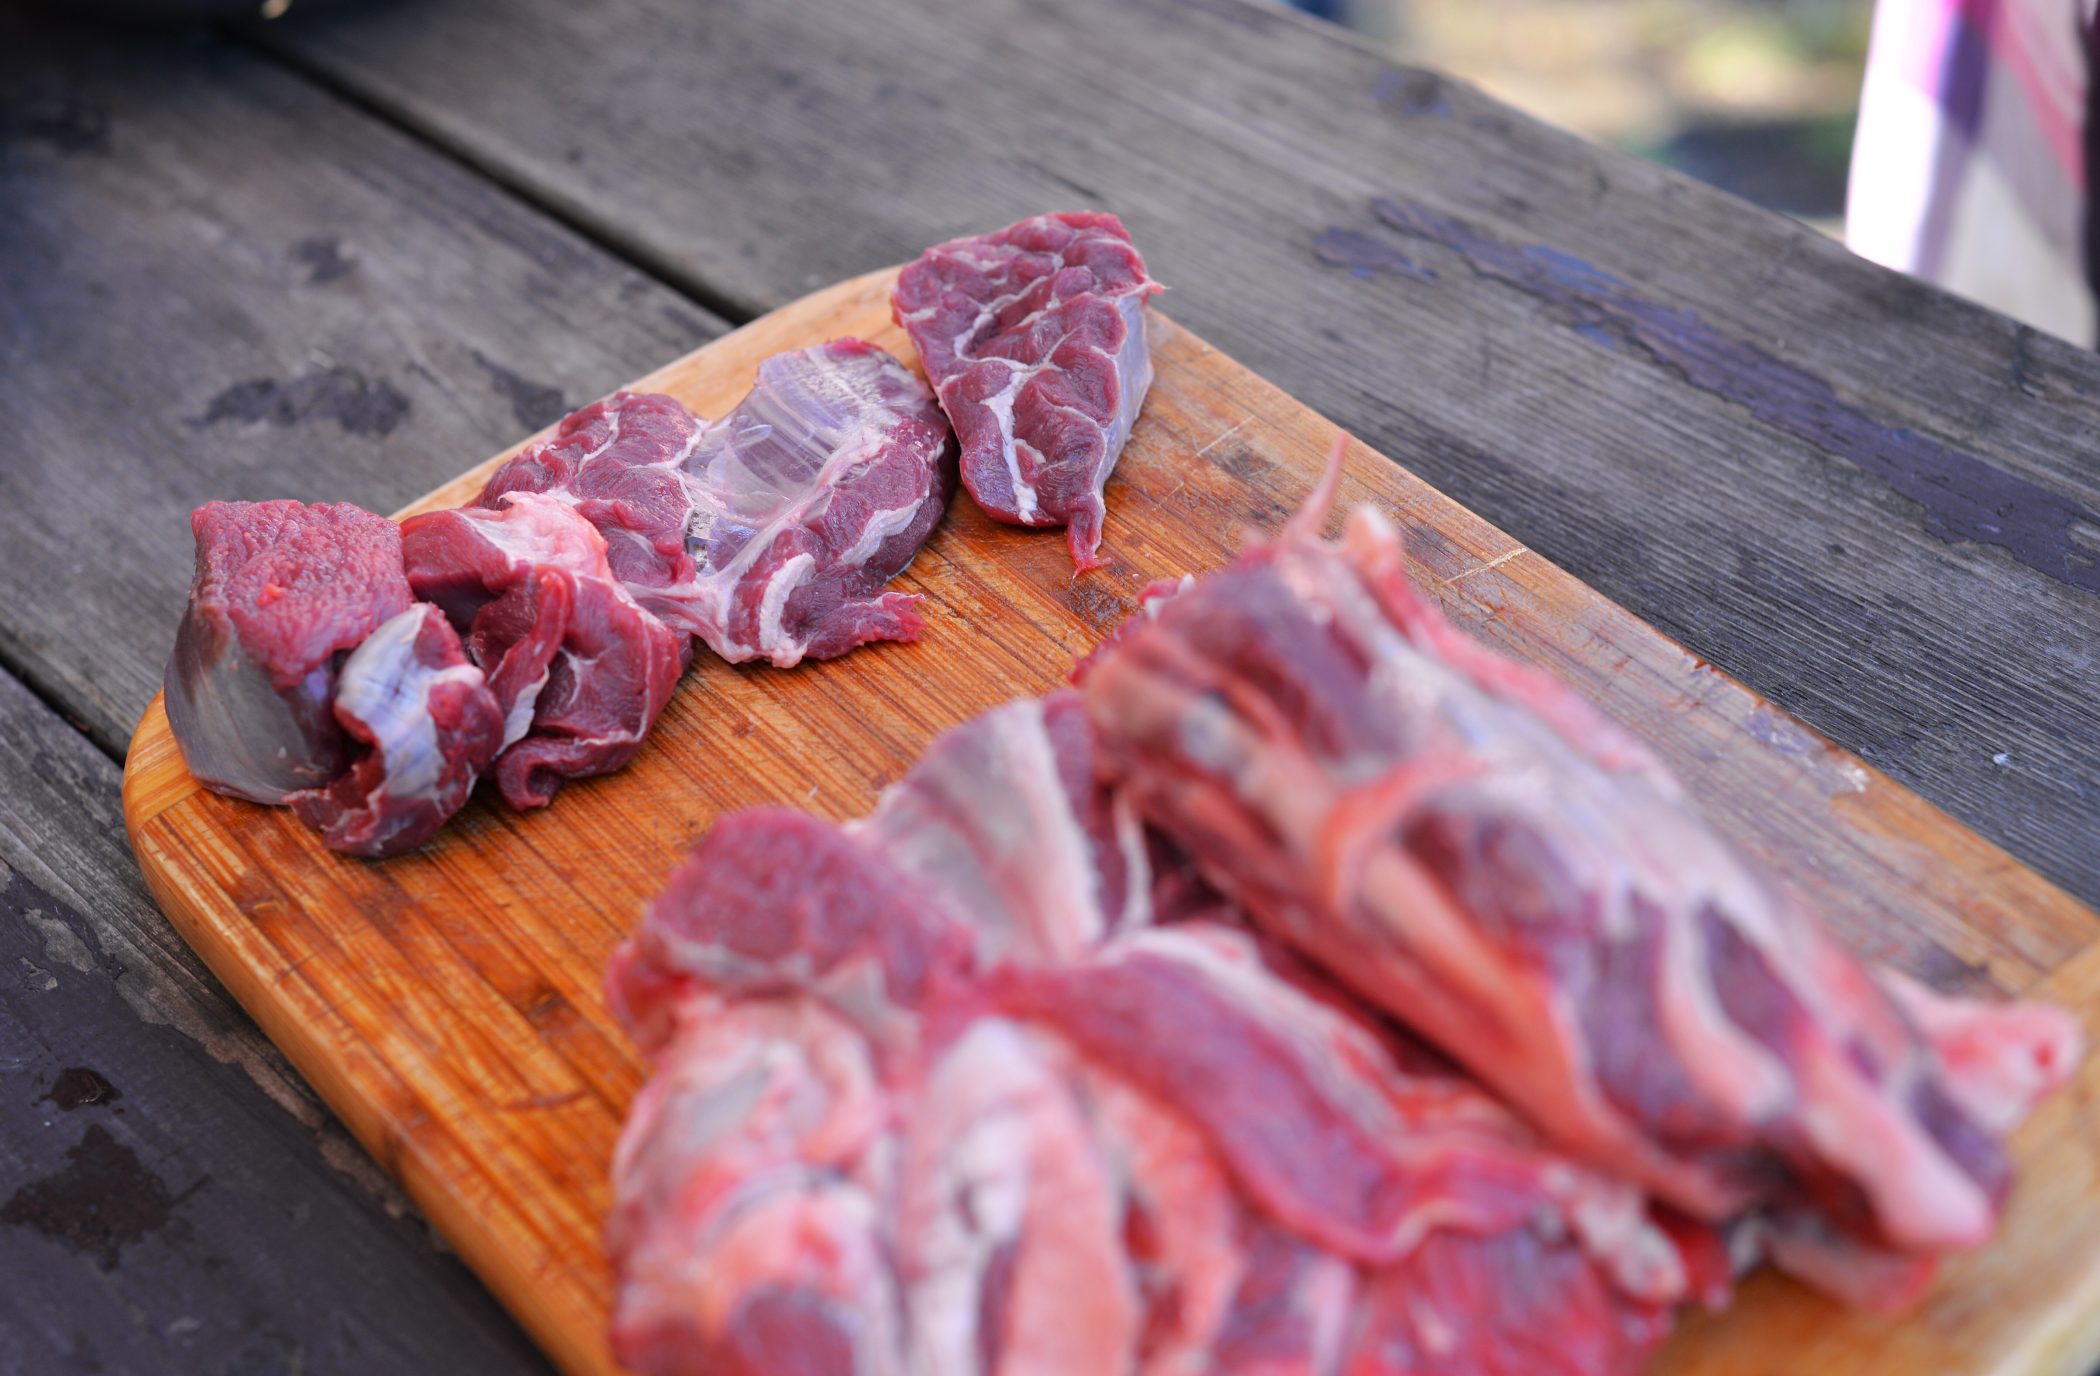 Hovězí maso nakrájíme na menší kostičky, vepřové na větší kostičky (různé velikosti kvůli délce vaření masa)